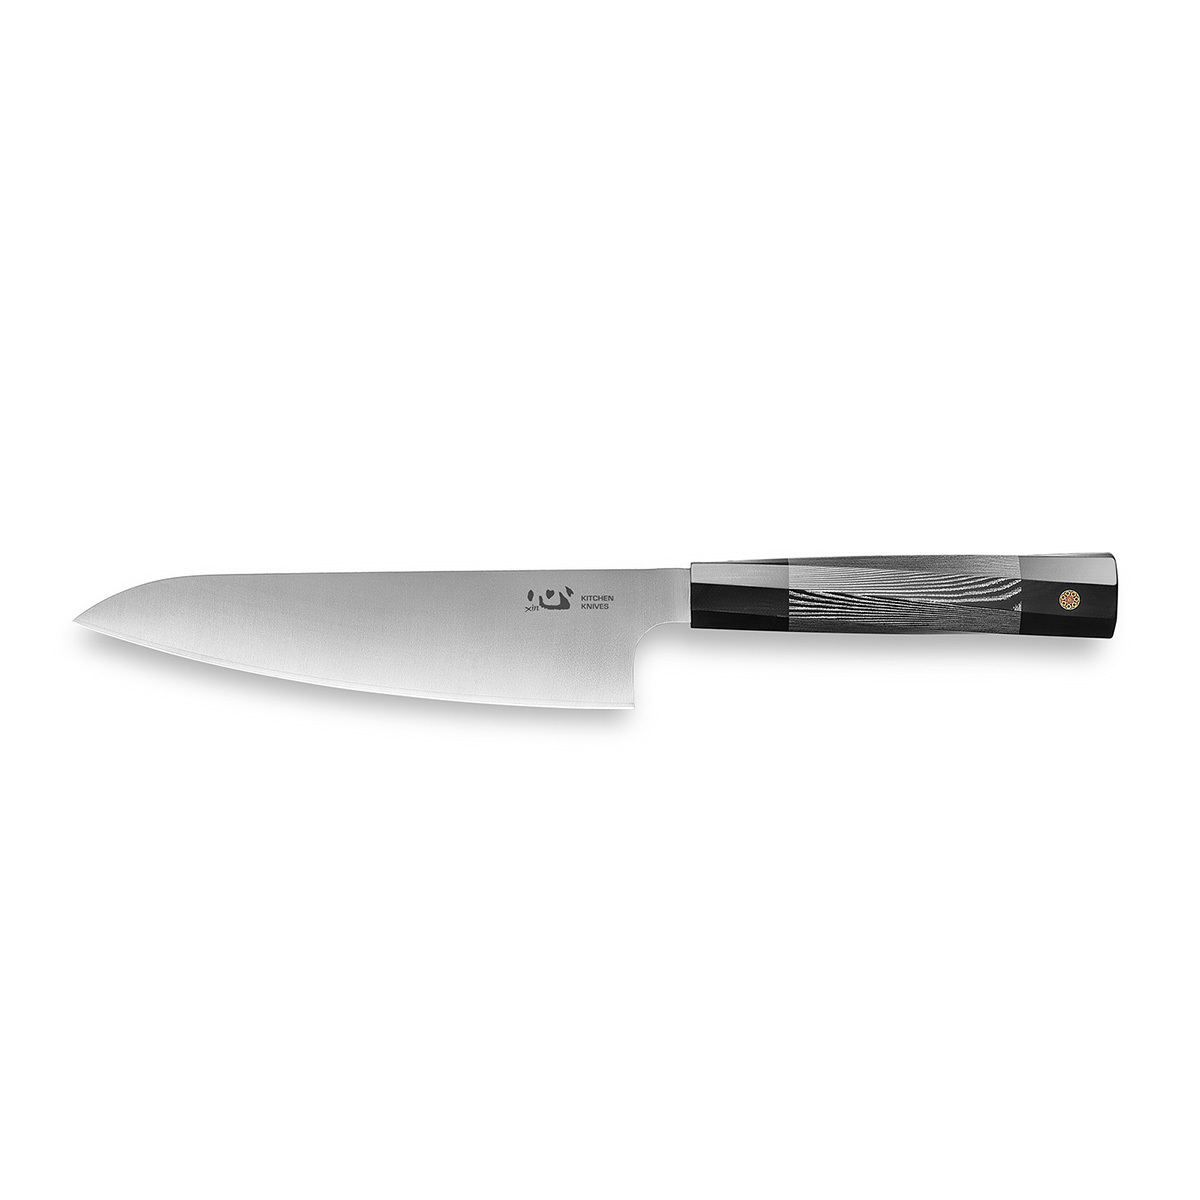 нож кухонный xin cutlery xc103 utility knife Нож кухонный Xin Cutlery Utility knife XC103 175мм, сталь 304Cu, рукоять G10, белый/черный